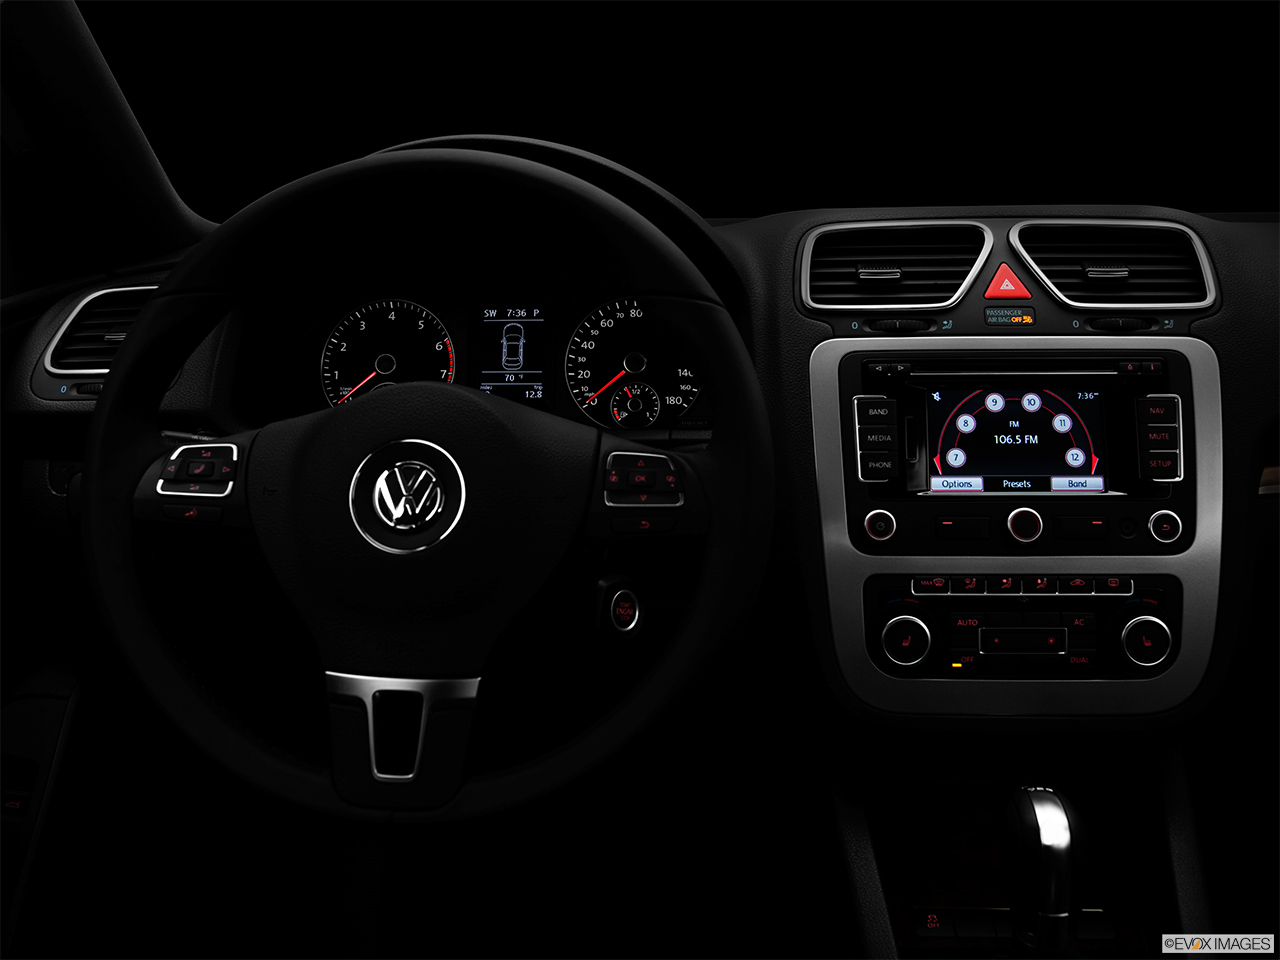 2012 Volkswagen Eos Lux Centered wide dash shot - "night" shot. 